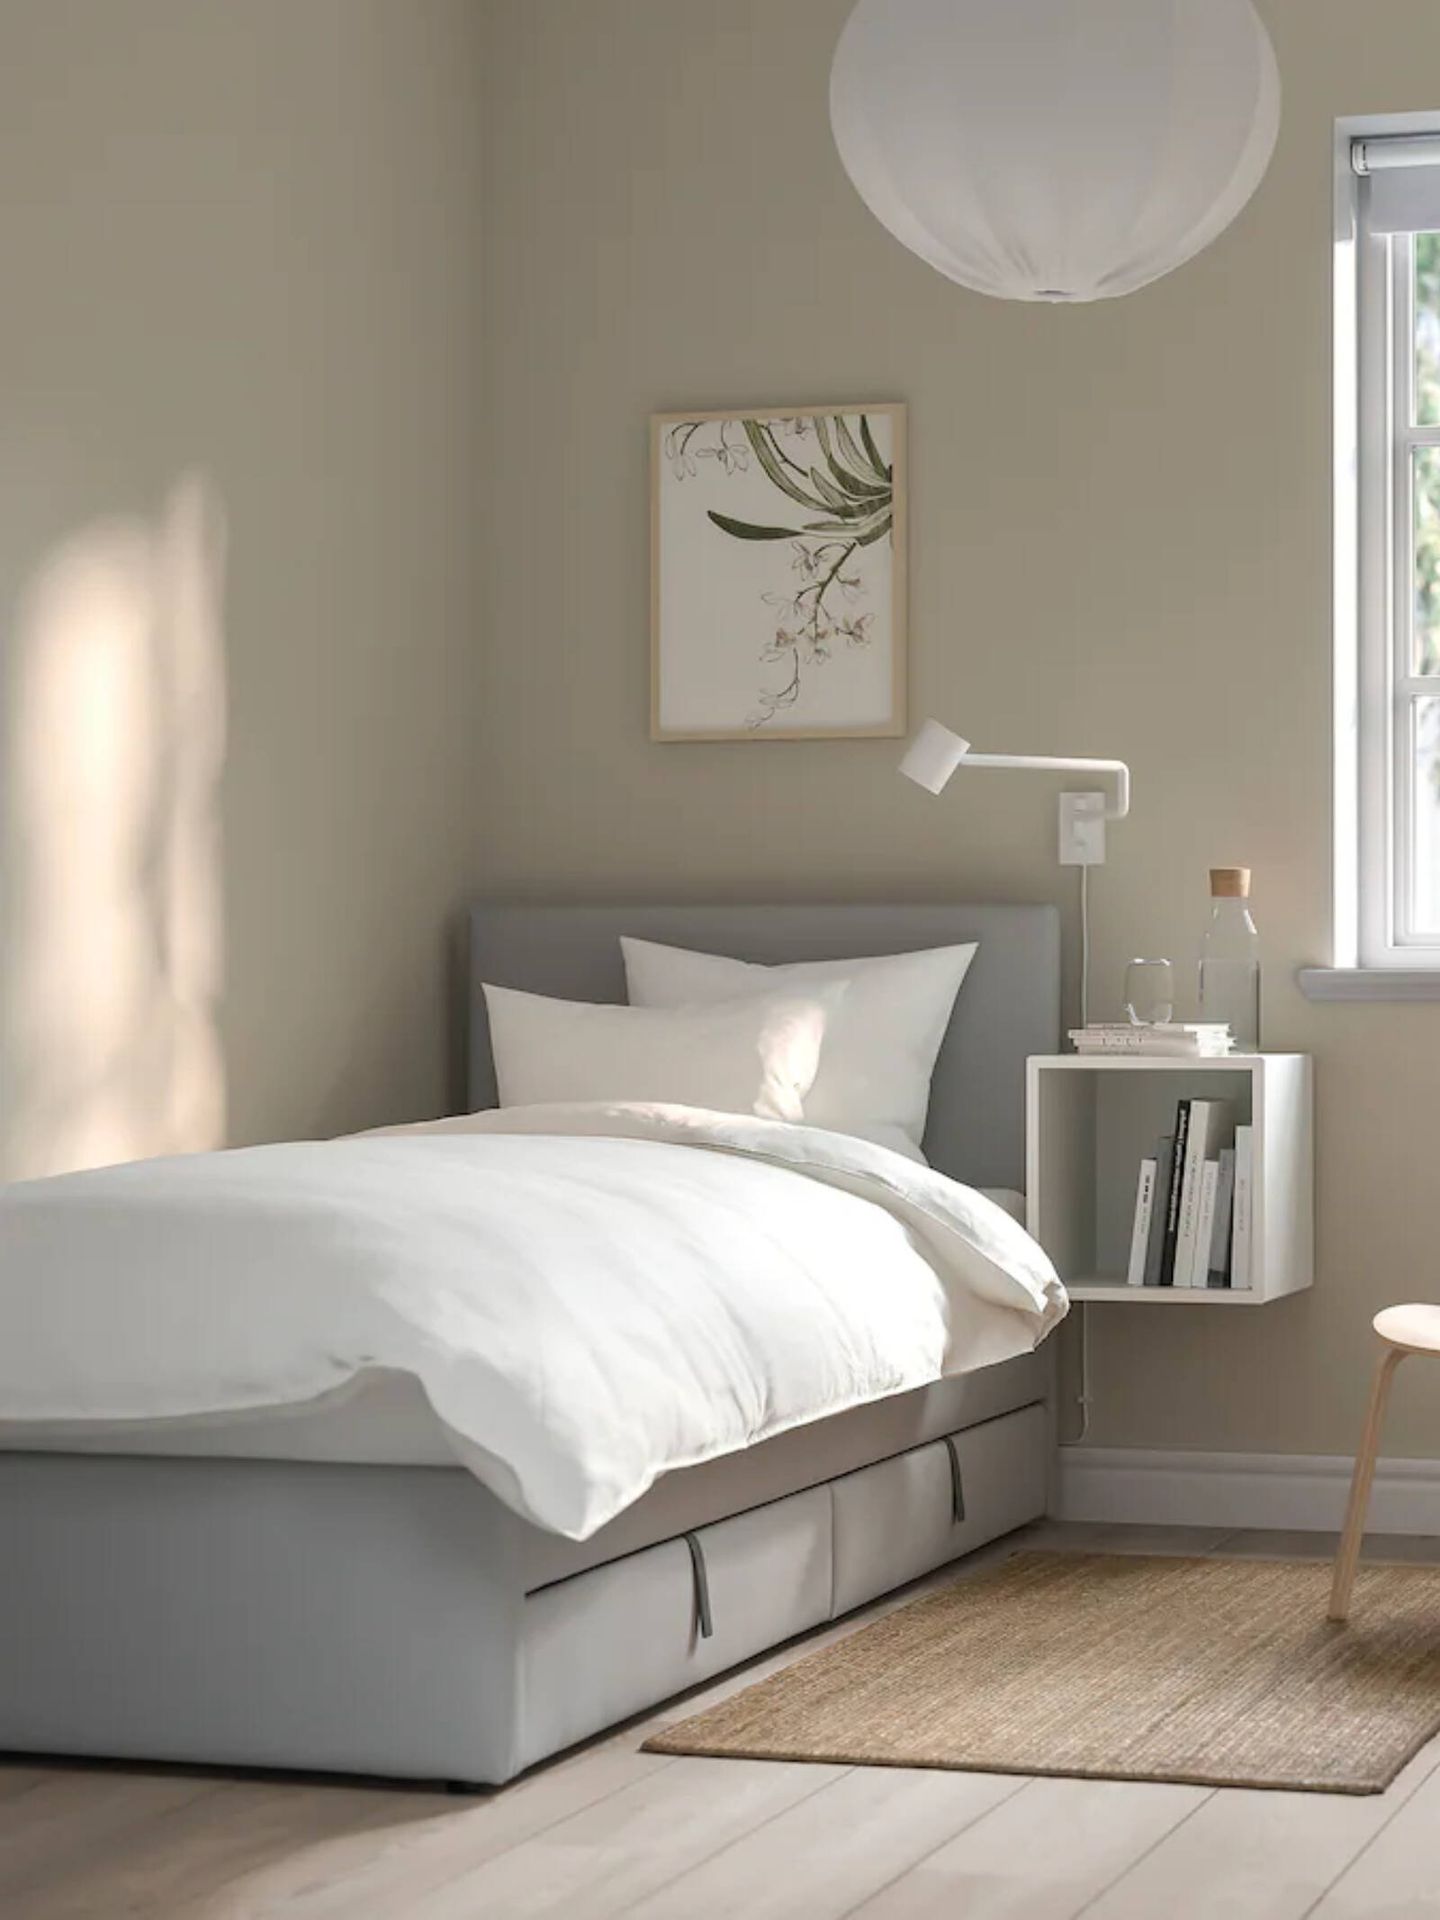 Esta cama de Ikea es el mueble ideal para dormitorios pequeños y ordenados. (Cortesía/ Ikea)